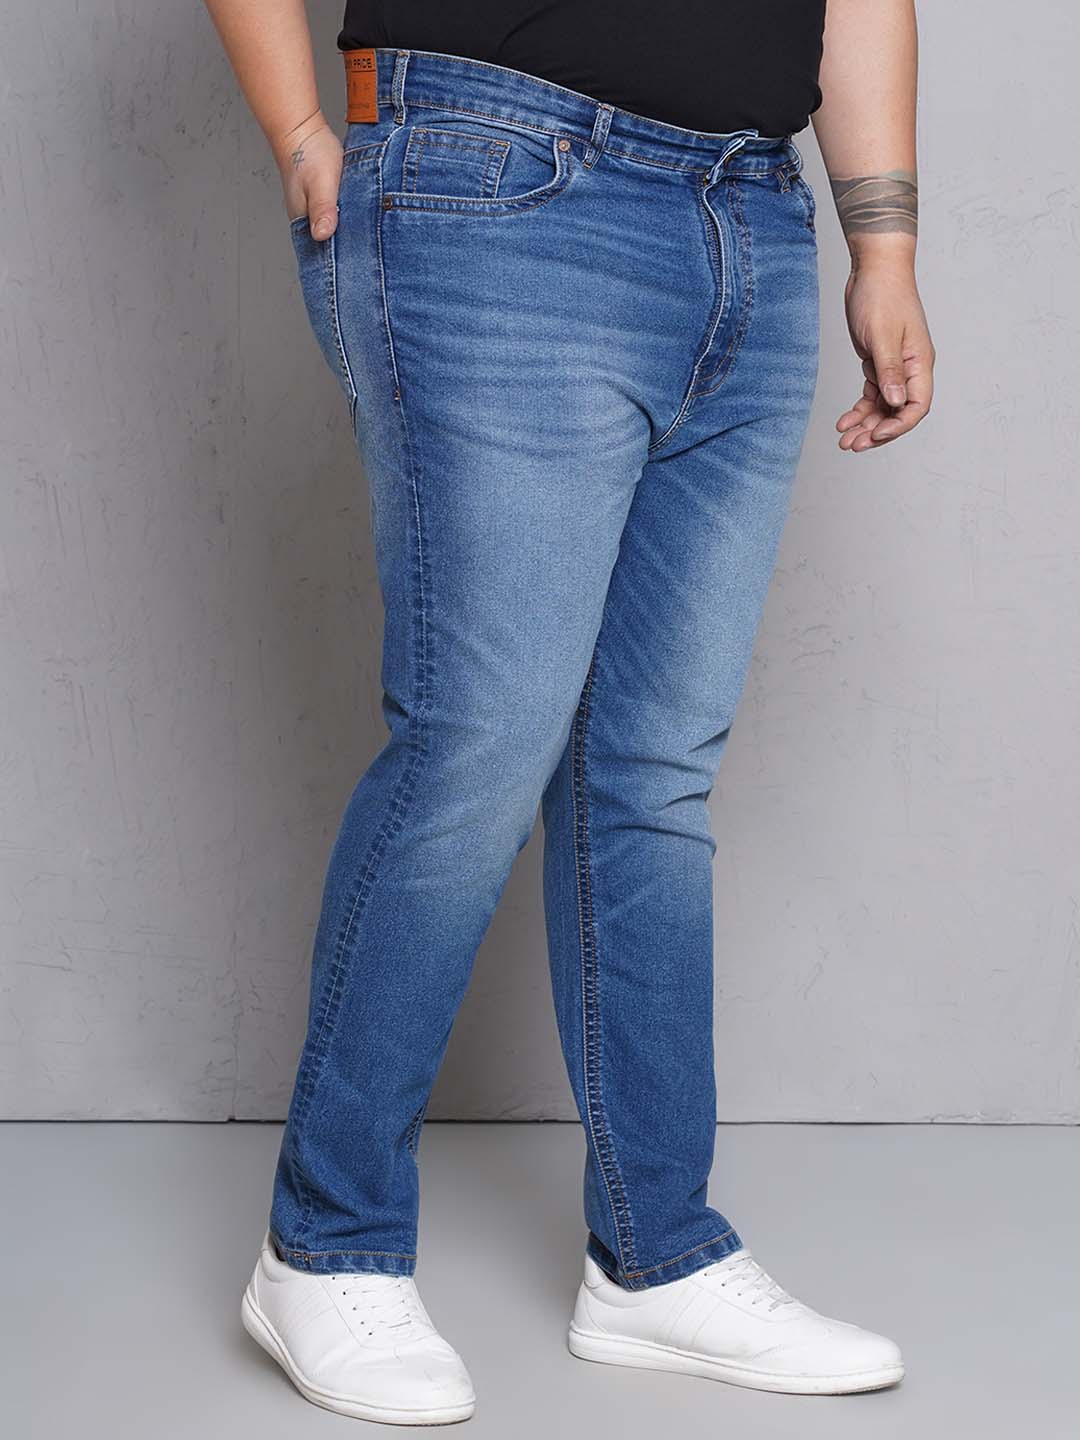 bottomwear/jeans/EJPJ25149/ejpj25149-5.jpg